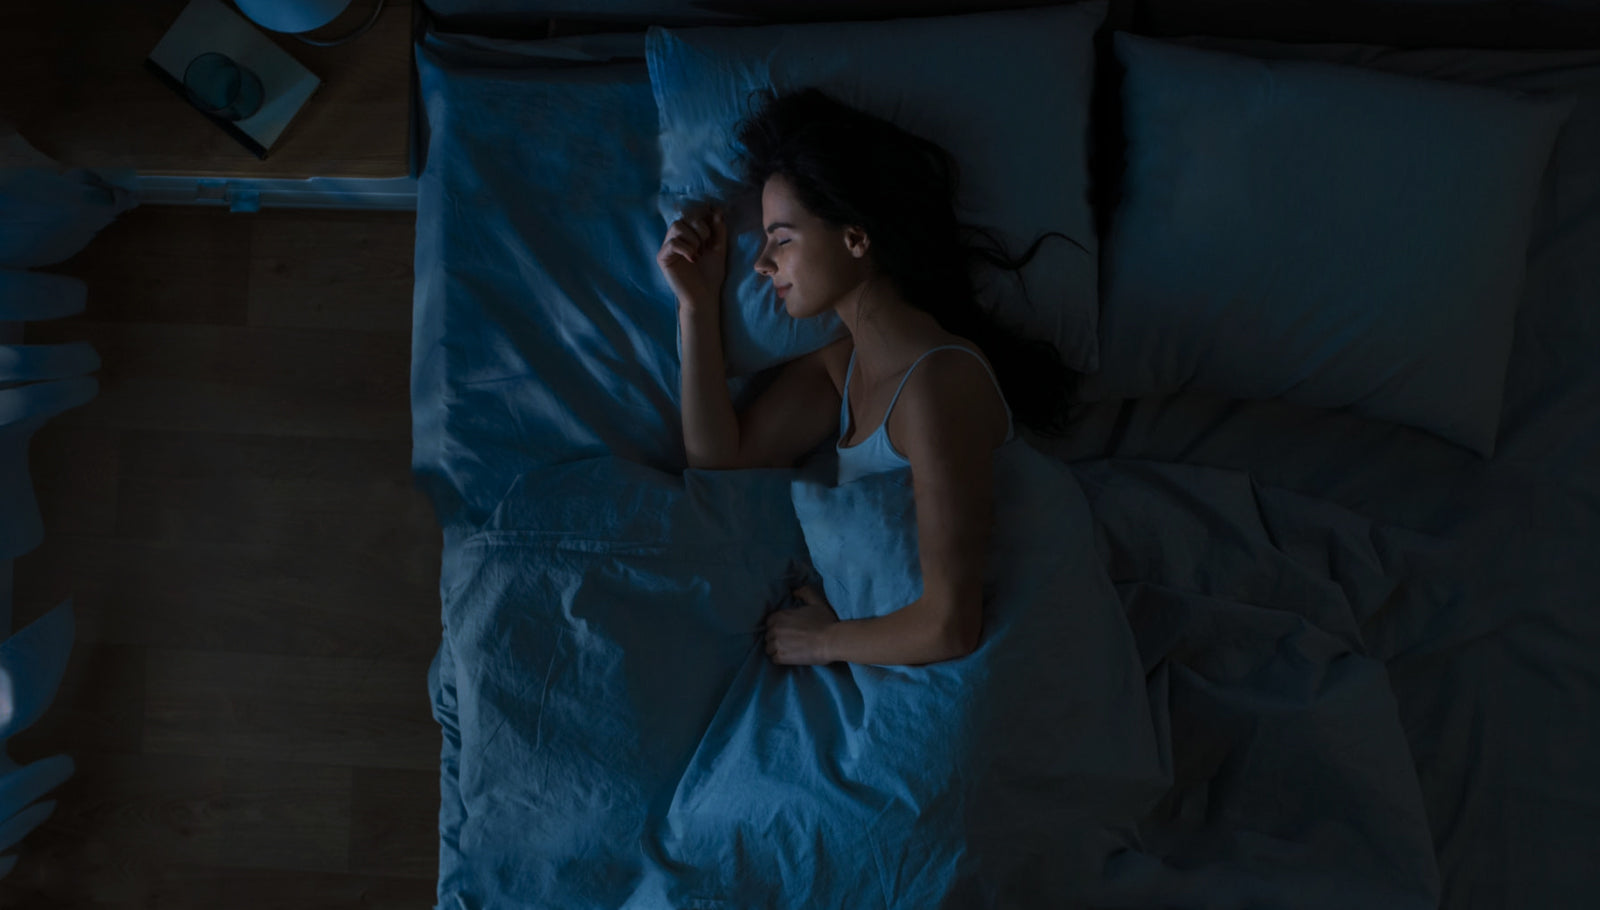 Top 3 Benefits of Sleeping in The Dark